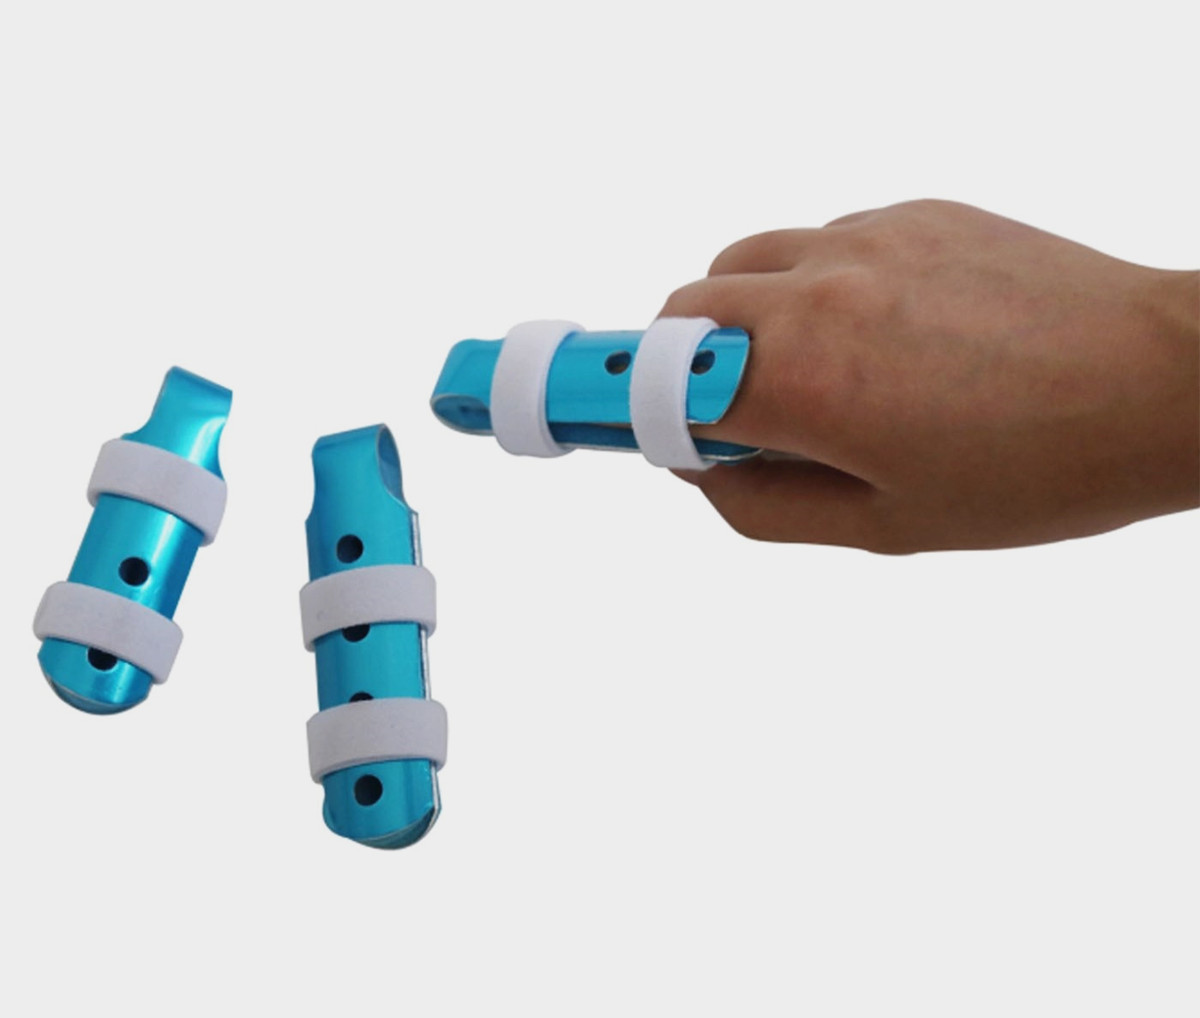 Verstelbare aluminium kindervinger spalk braces met of zonder riemen voor bescherming of immobilisatie